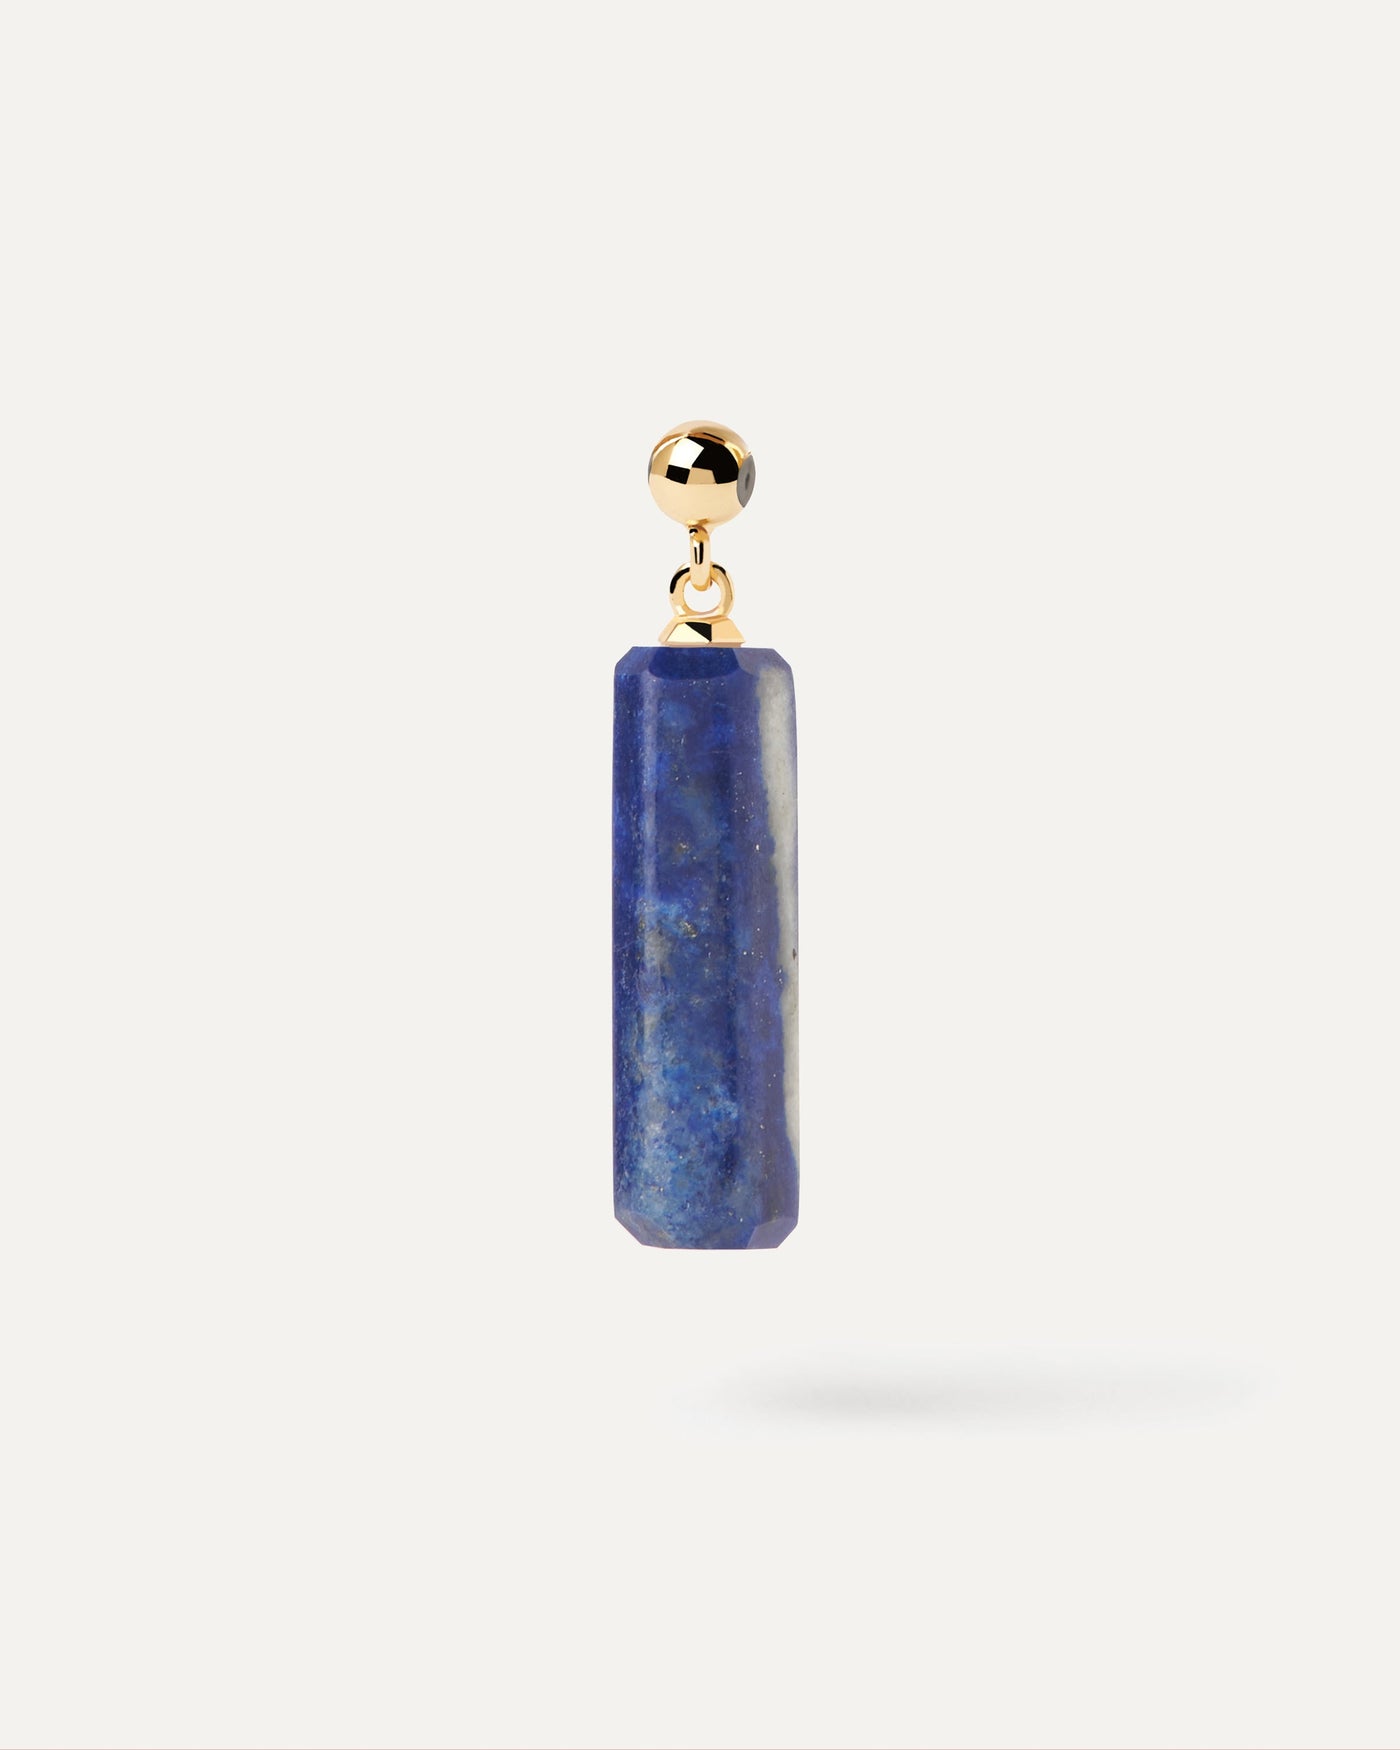 Charm Lapislazzuli. Charm di pietra blu scuro di forma allungata per collana o braccialetto. Acquista le ultime novità di PDPAOLA. Effettua il tuo ordine in tutta sicurezza e non lasciarti sfuggire questo best seller.